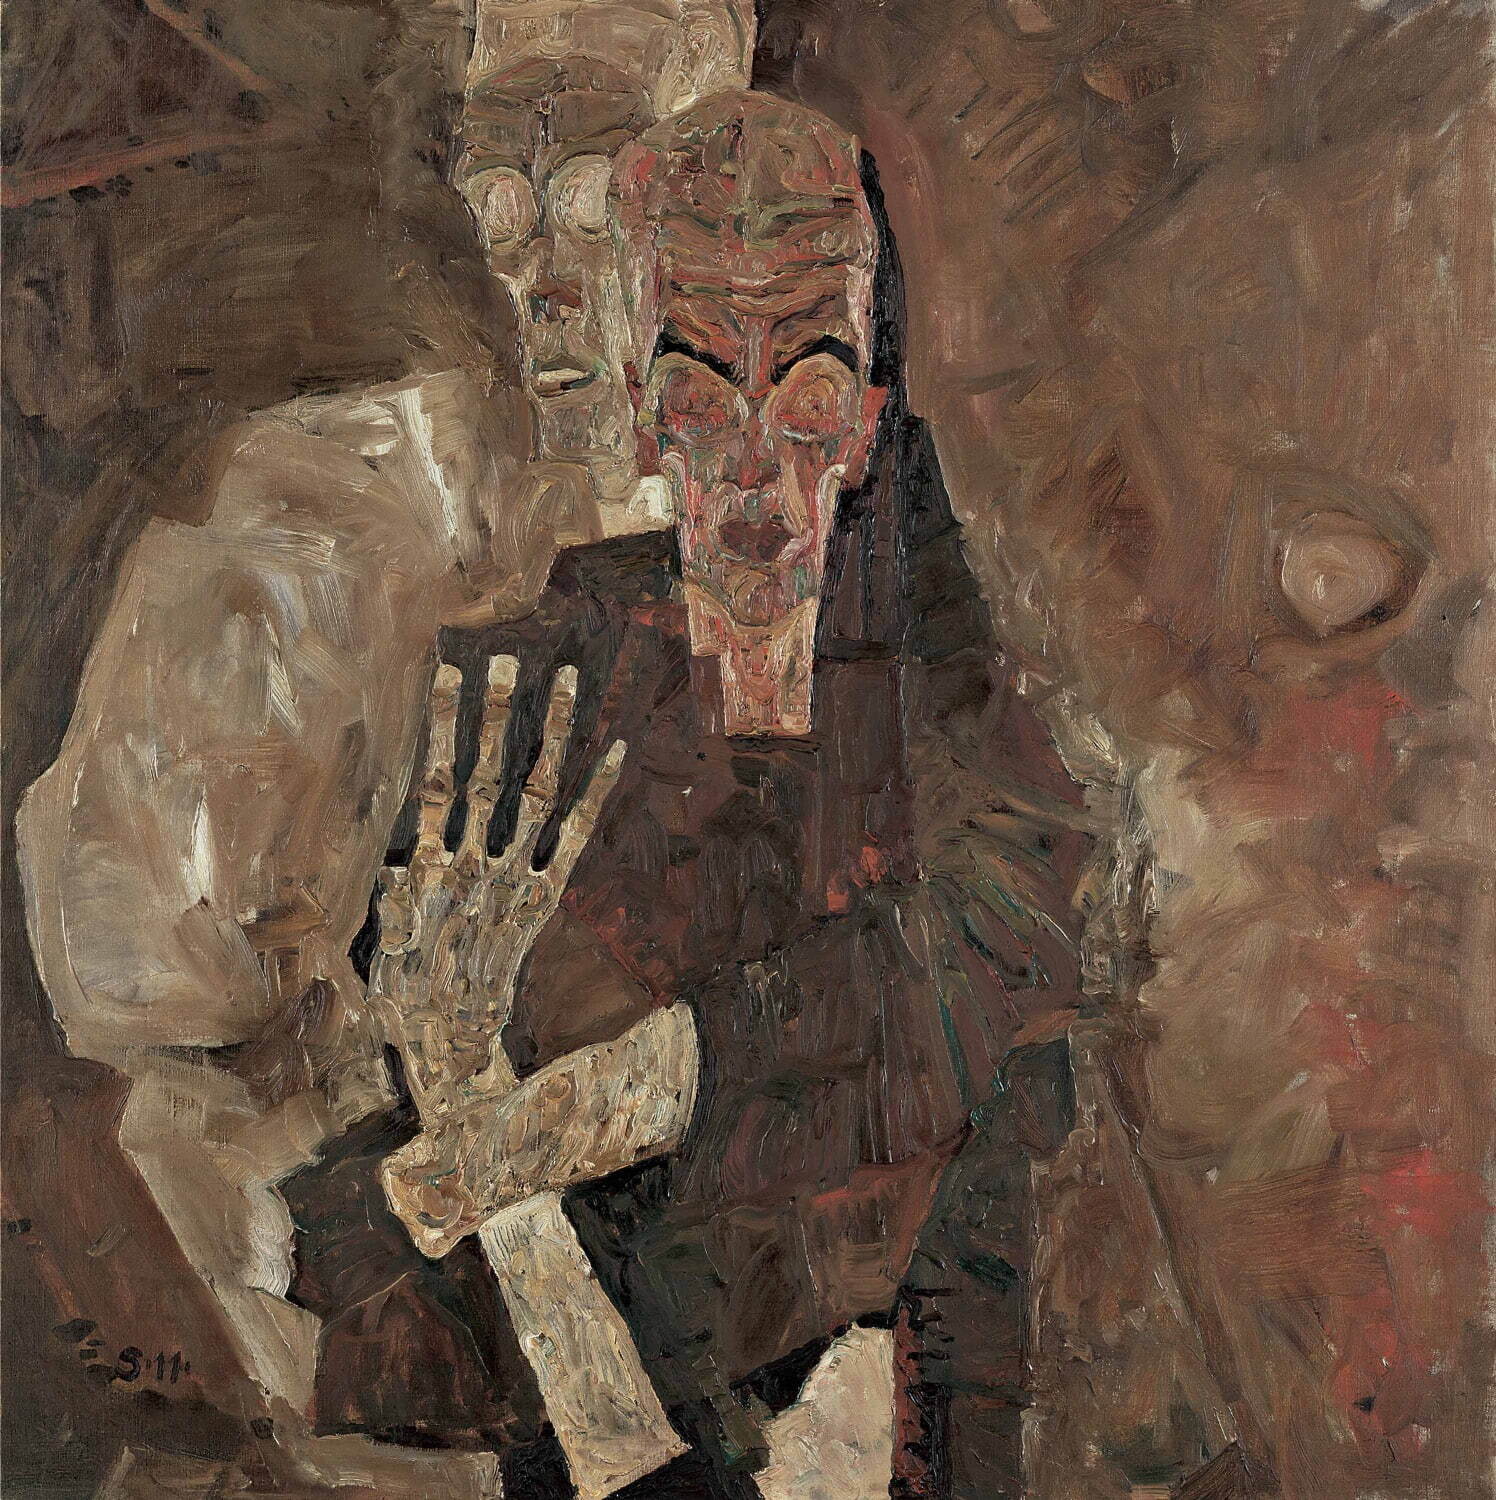 エゴン・シーレ 《自分を見つめる人II (死と男)》 1911年 レオポルド美術館蔵
Leopold Museum, Vienna